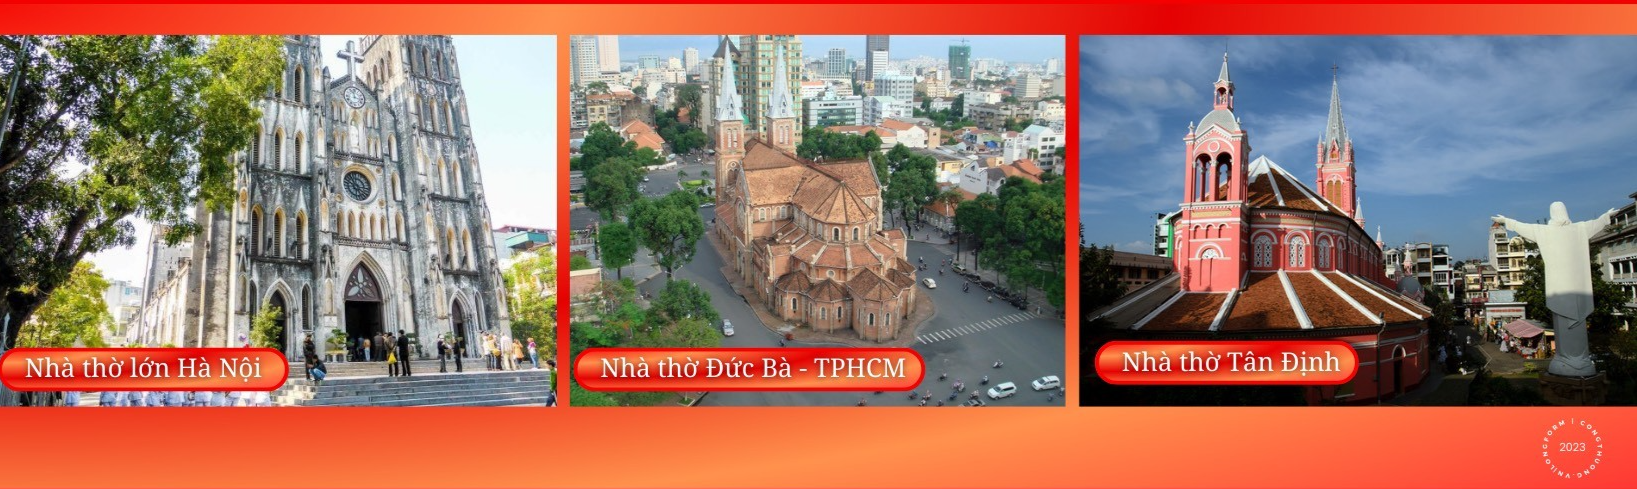 Longform | Chung tay phát triển kinh tế - xã hội: Nét đẹp của đồng bào Công giáo Việt